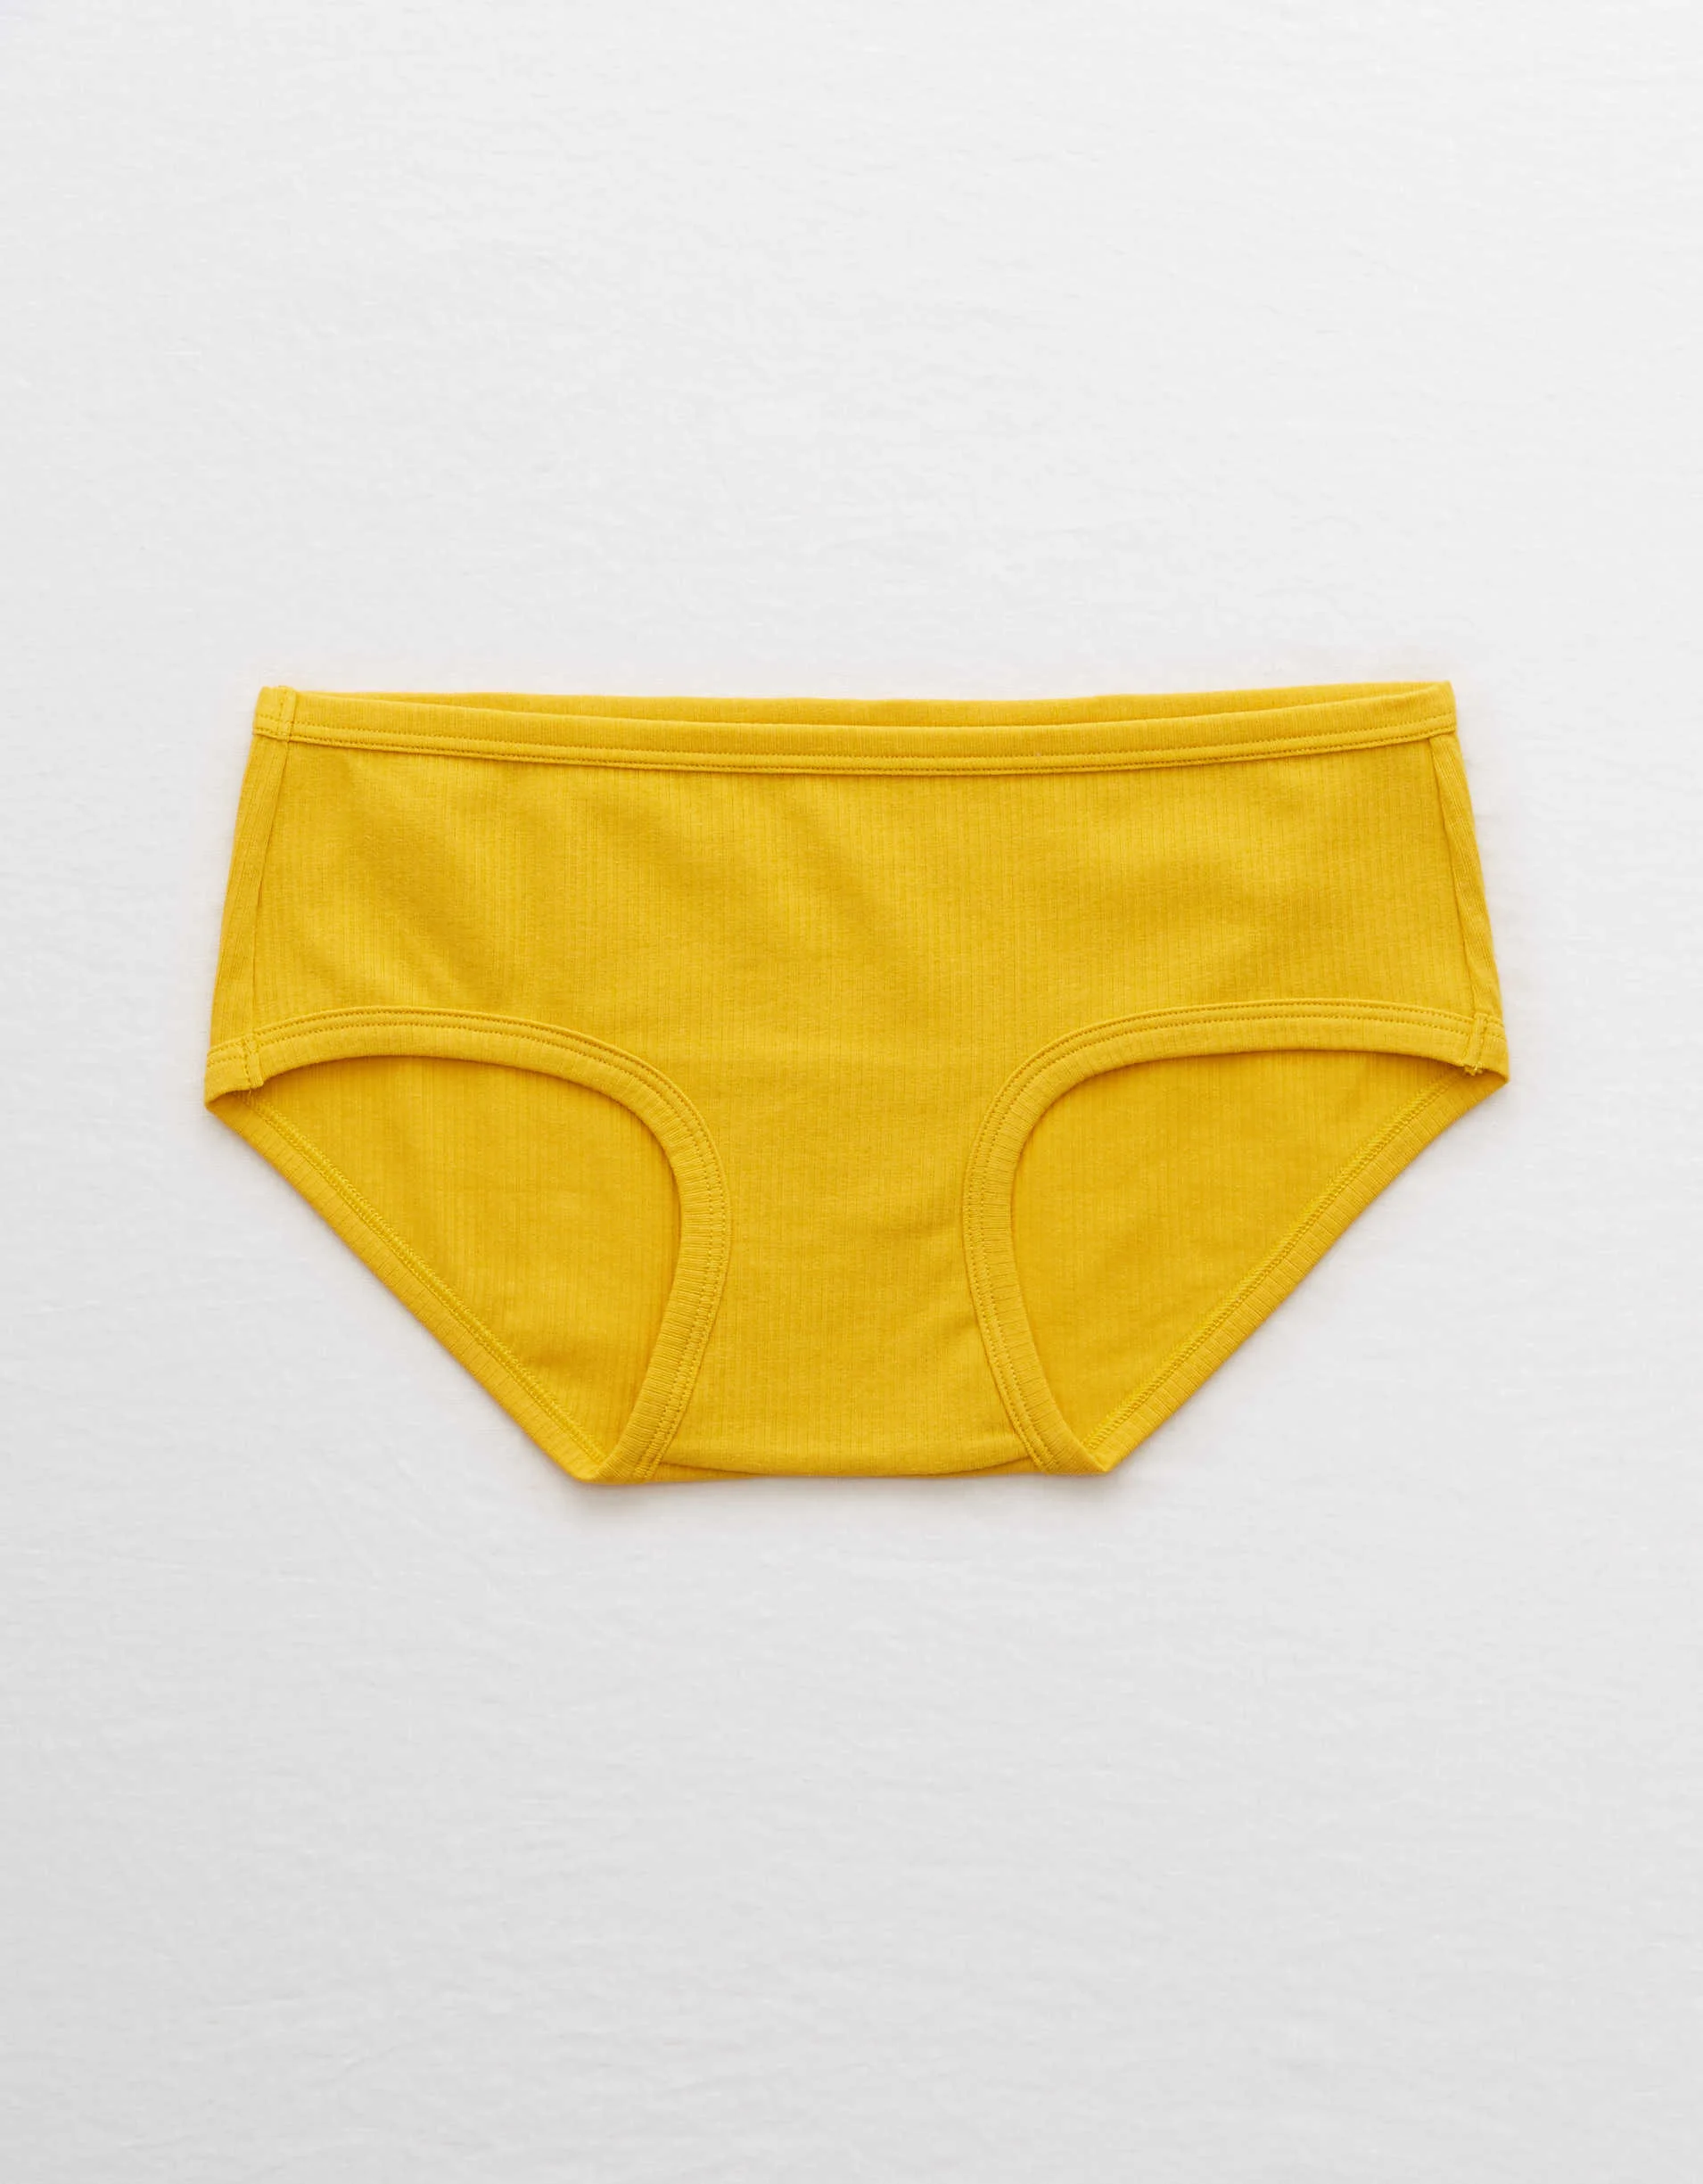 Aerie + Aerie Ribbed Boybrief Underwear